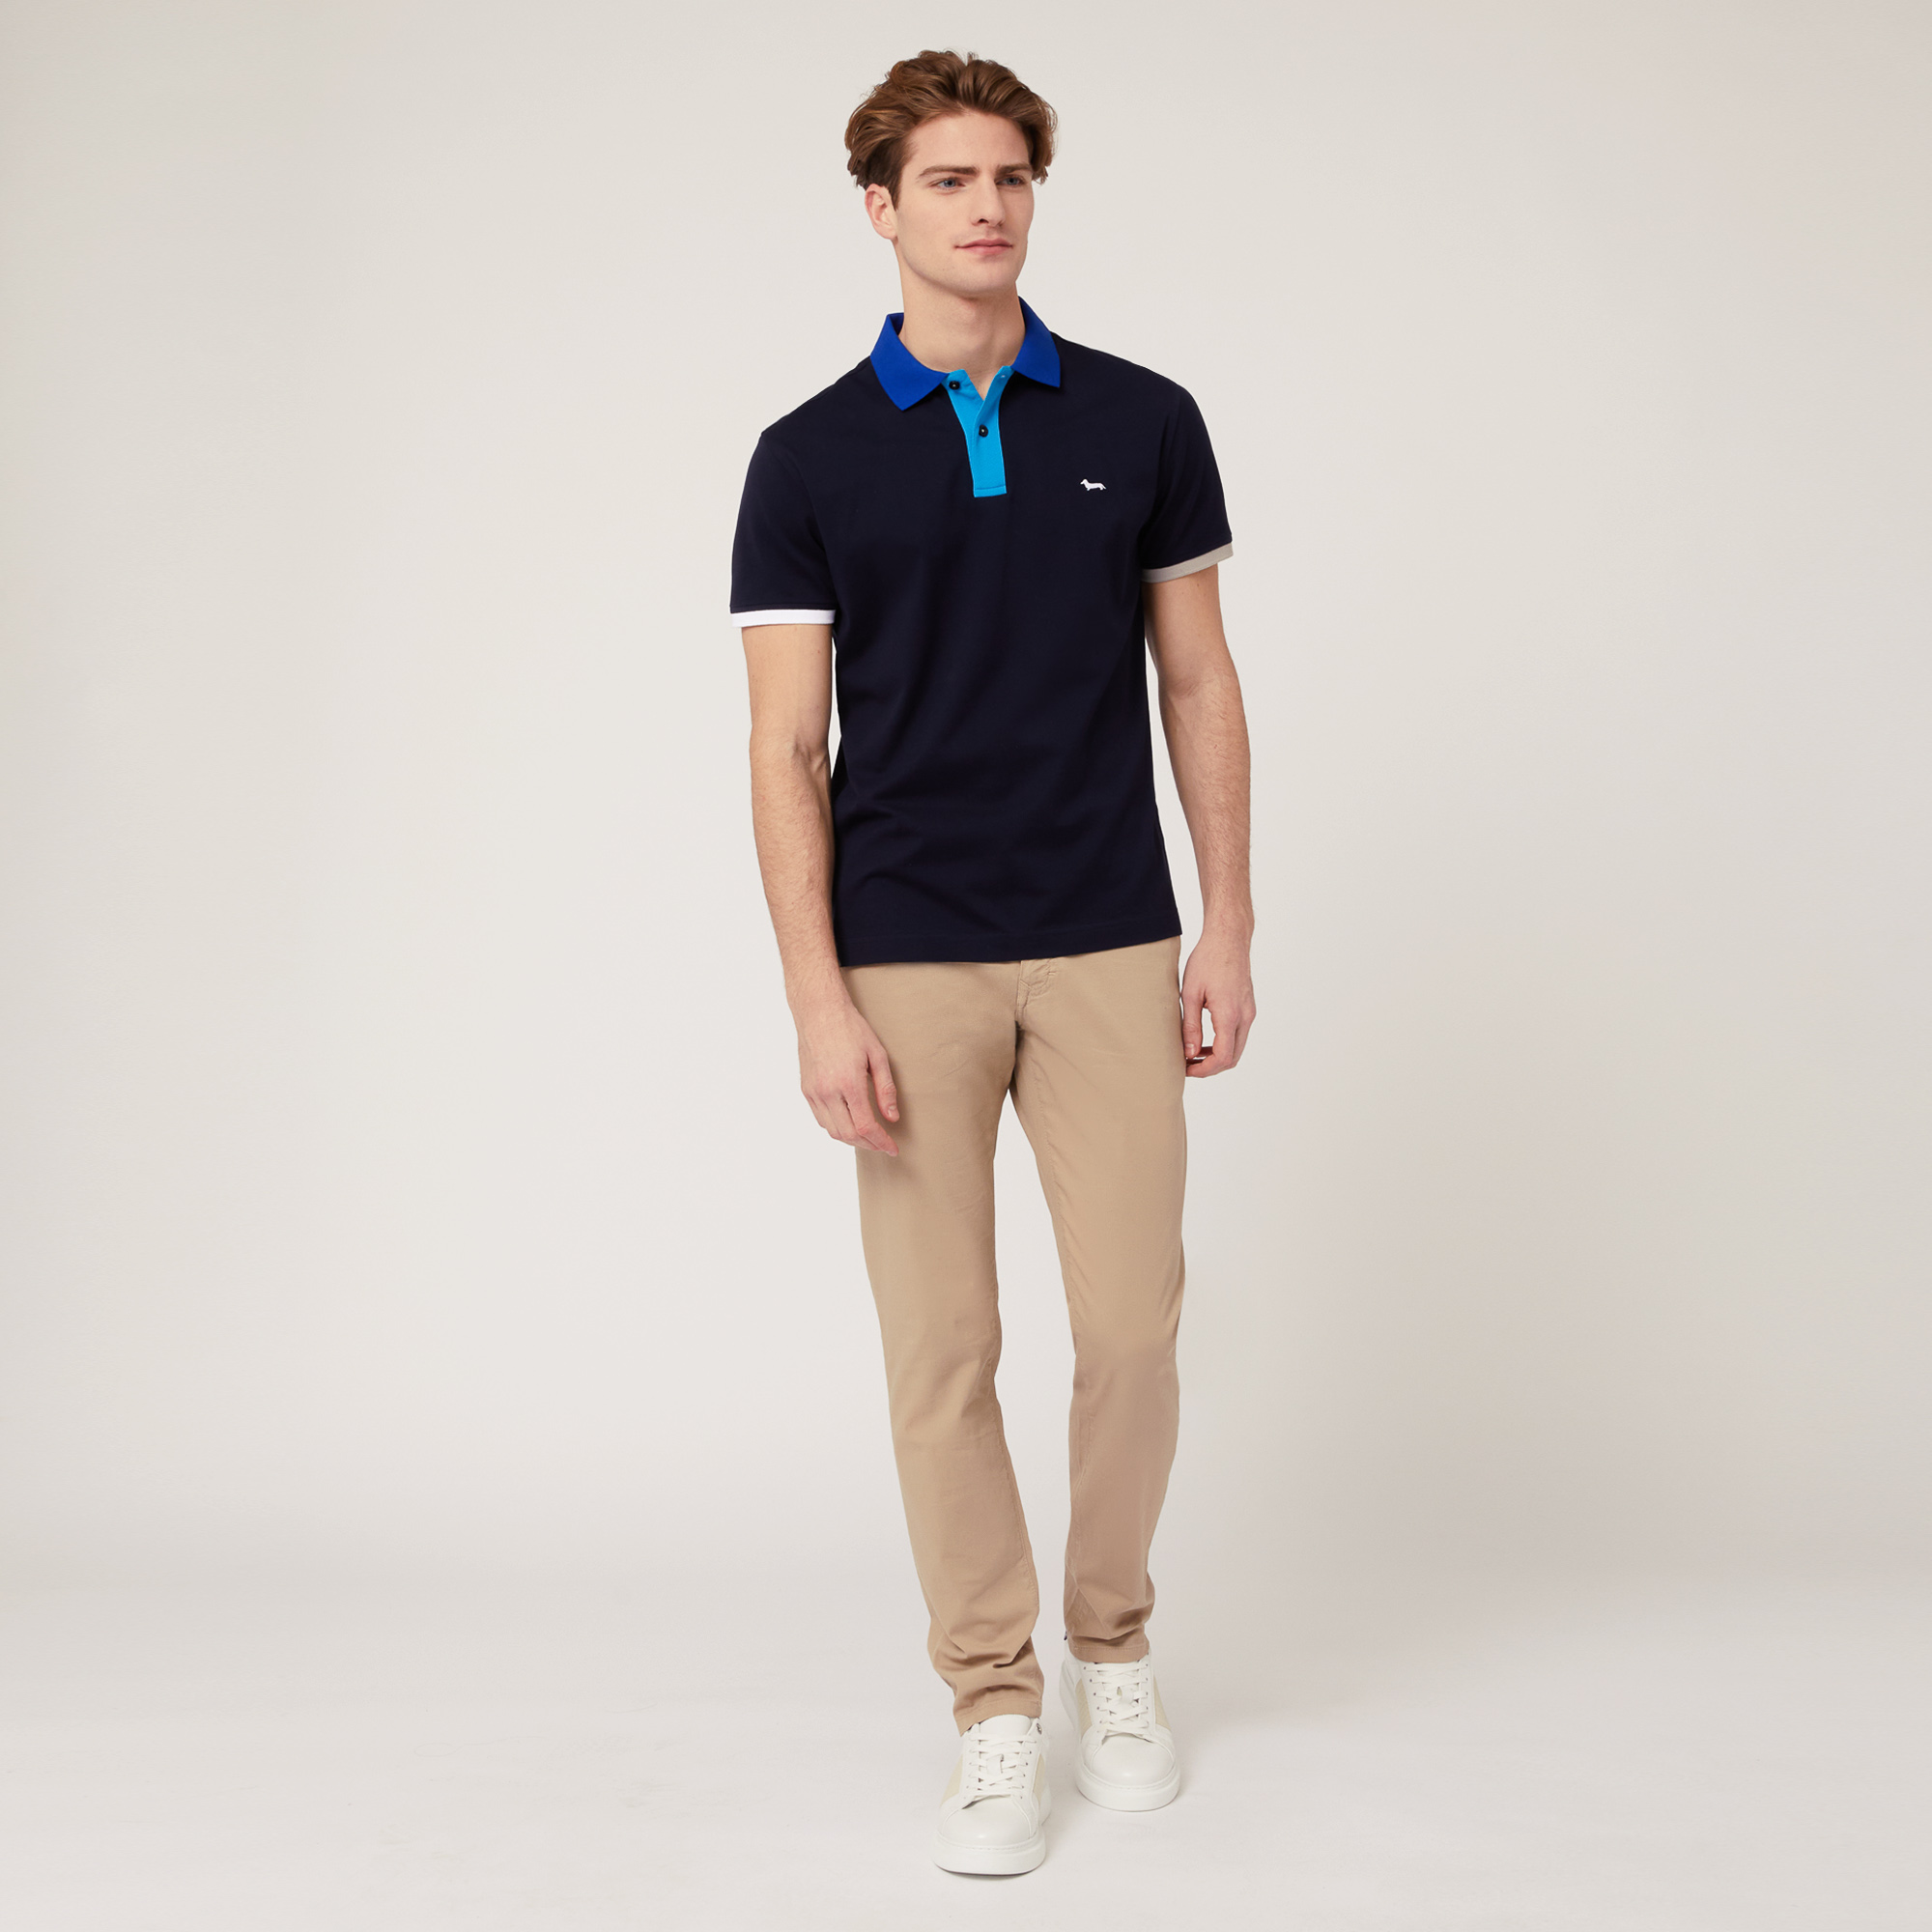 Baumwoll-Poloshirt mit Kontrastfarben, Blau, large image number 3